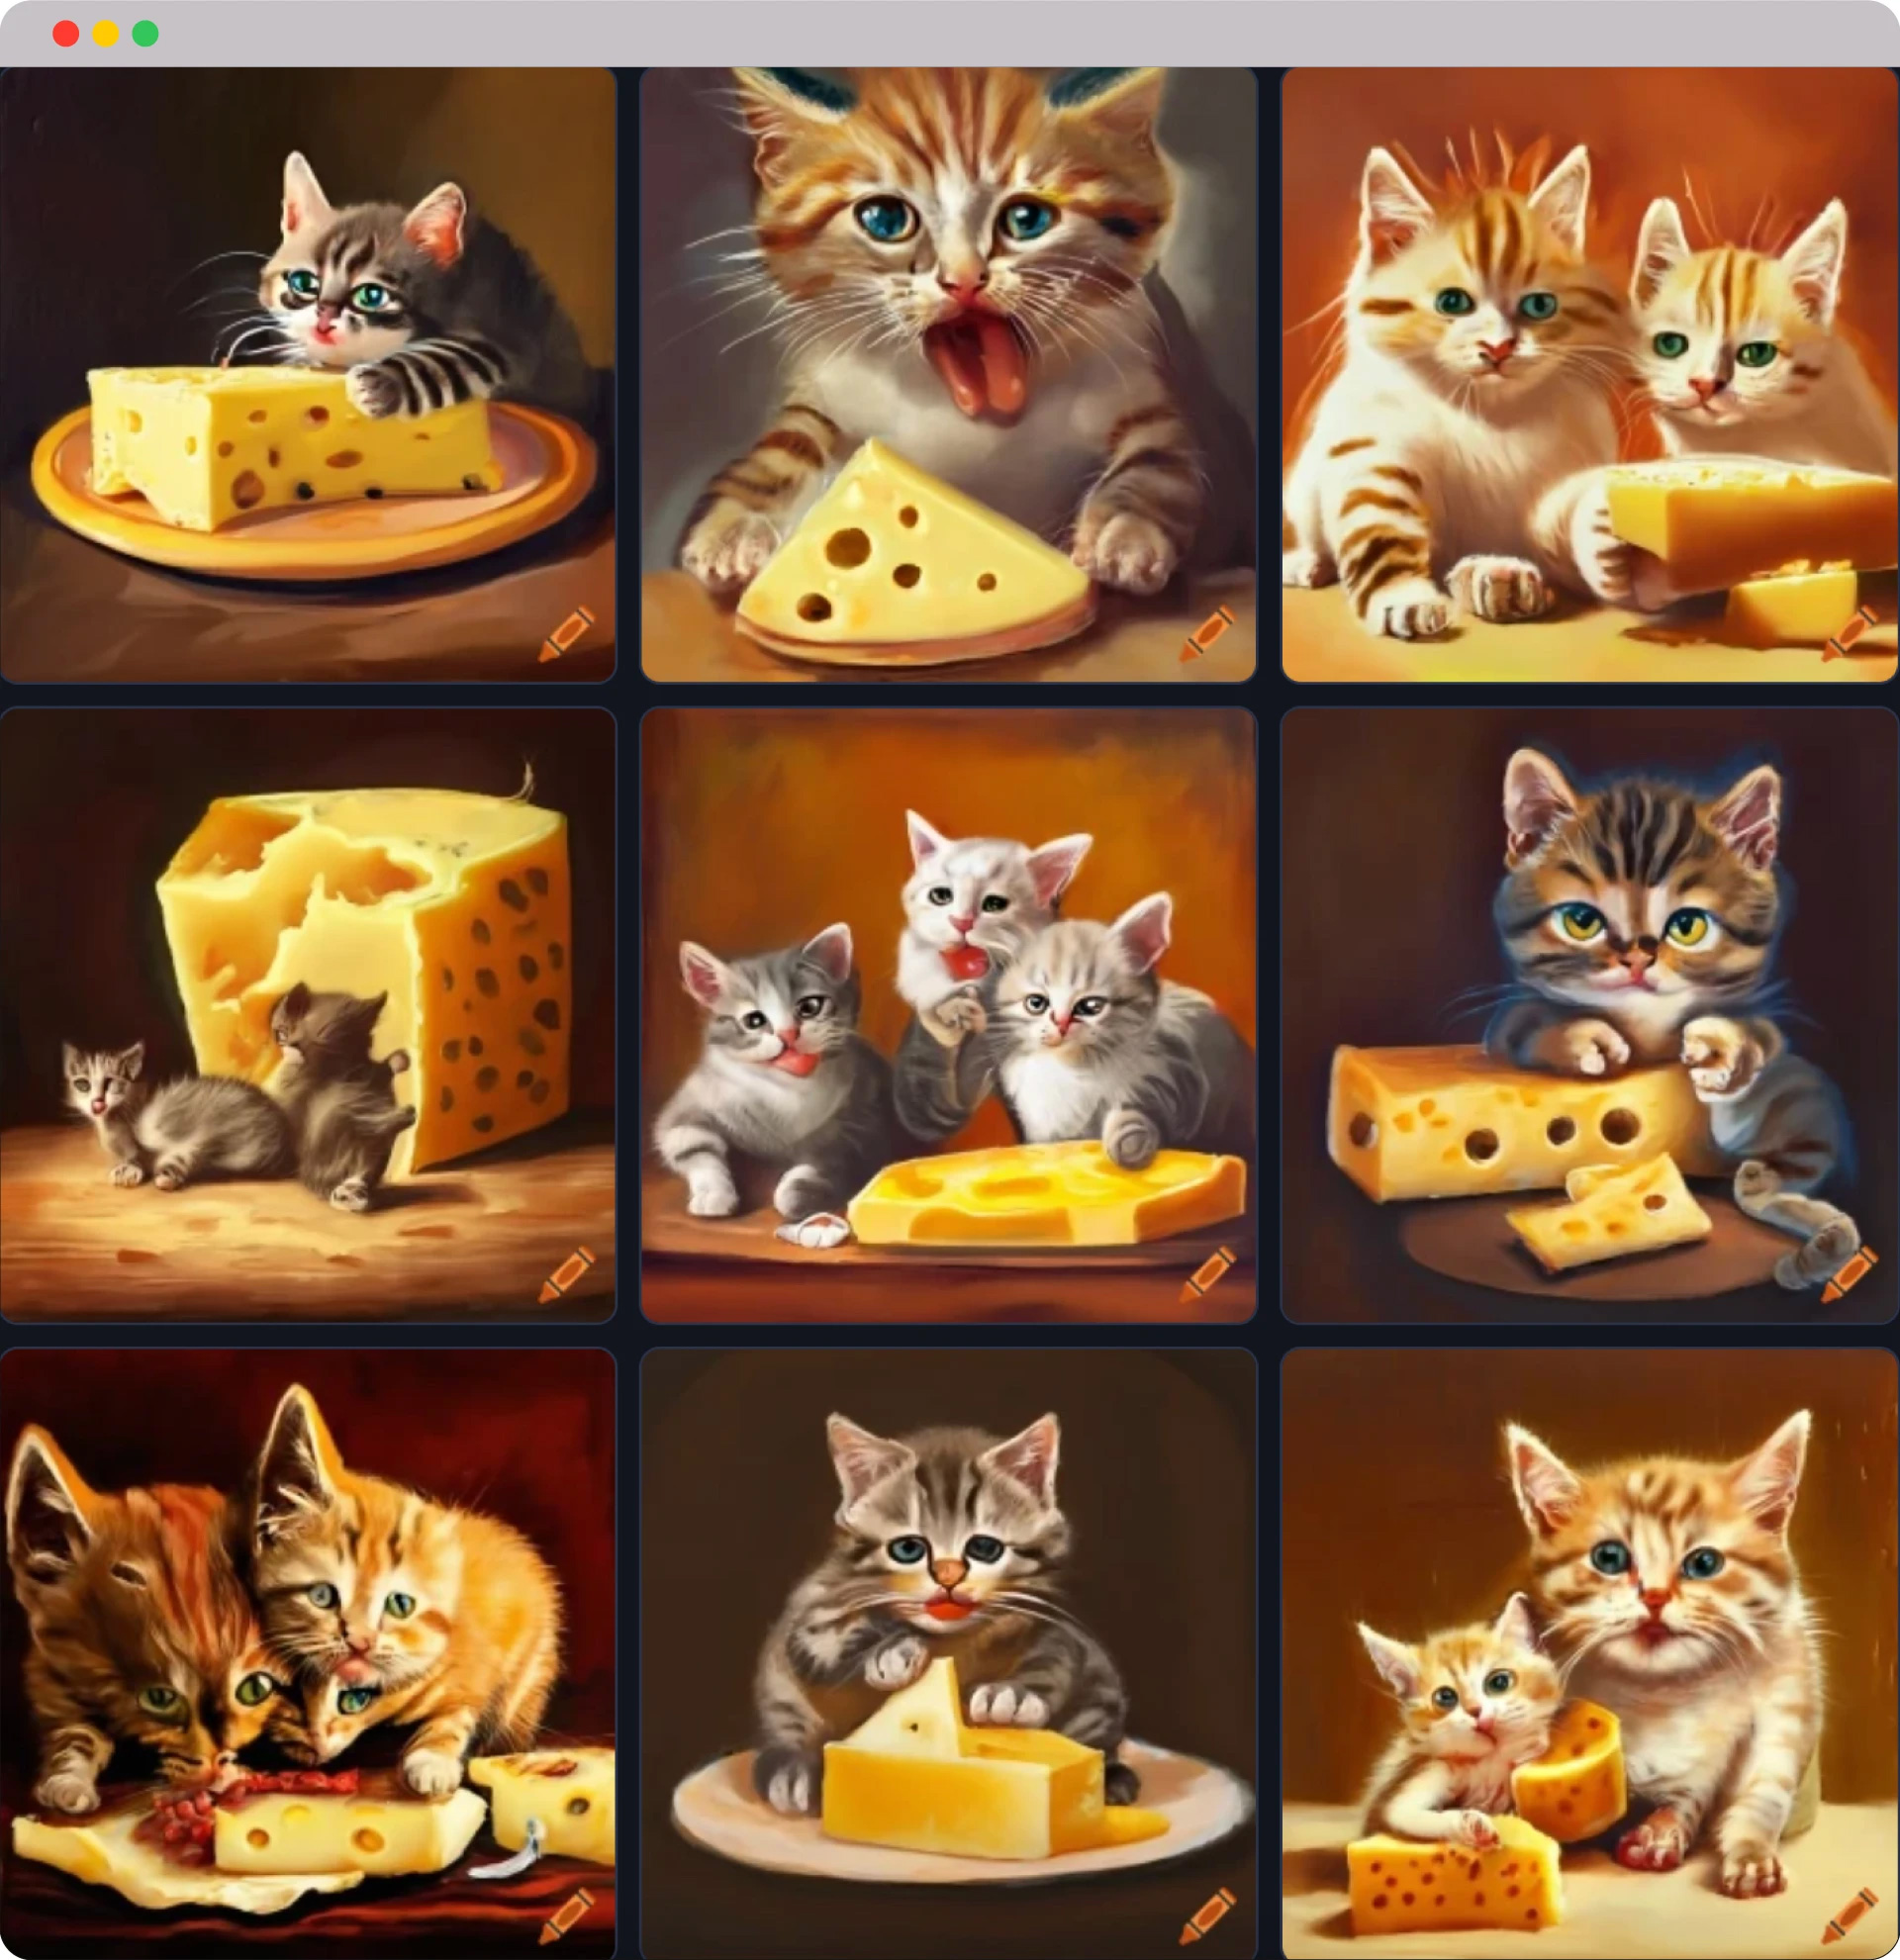 ۳ بچه گربه در حال پنیر خورن 